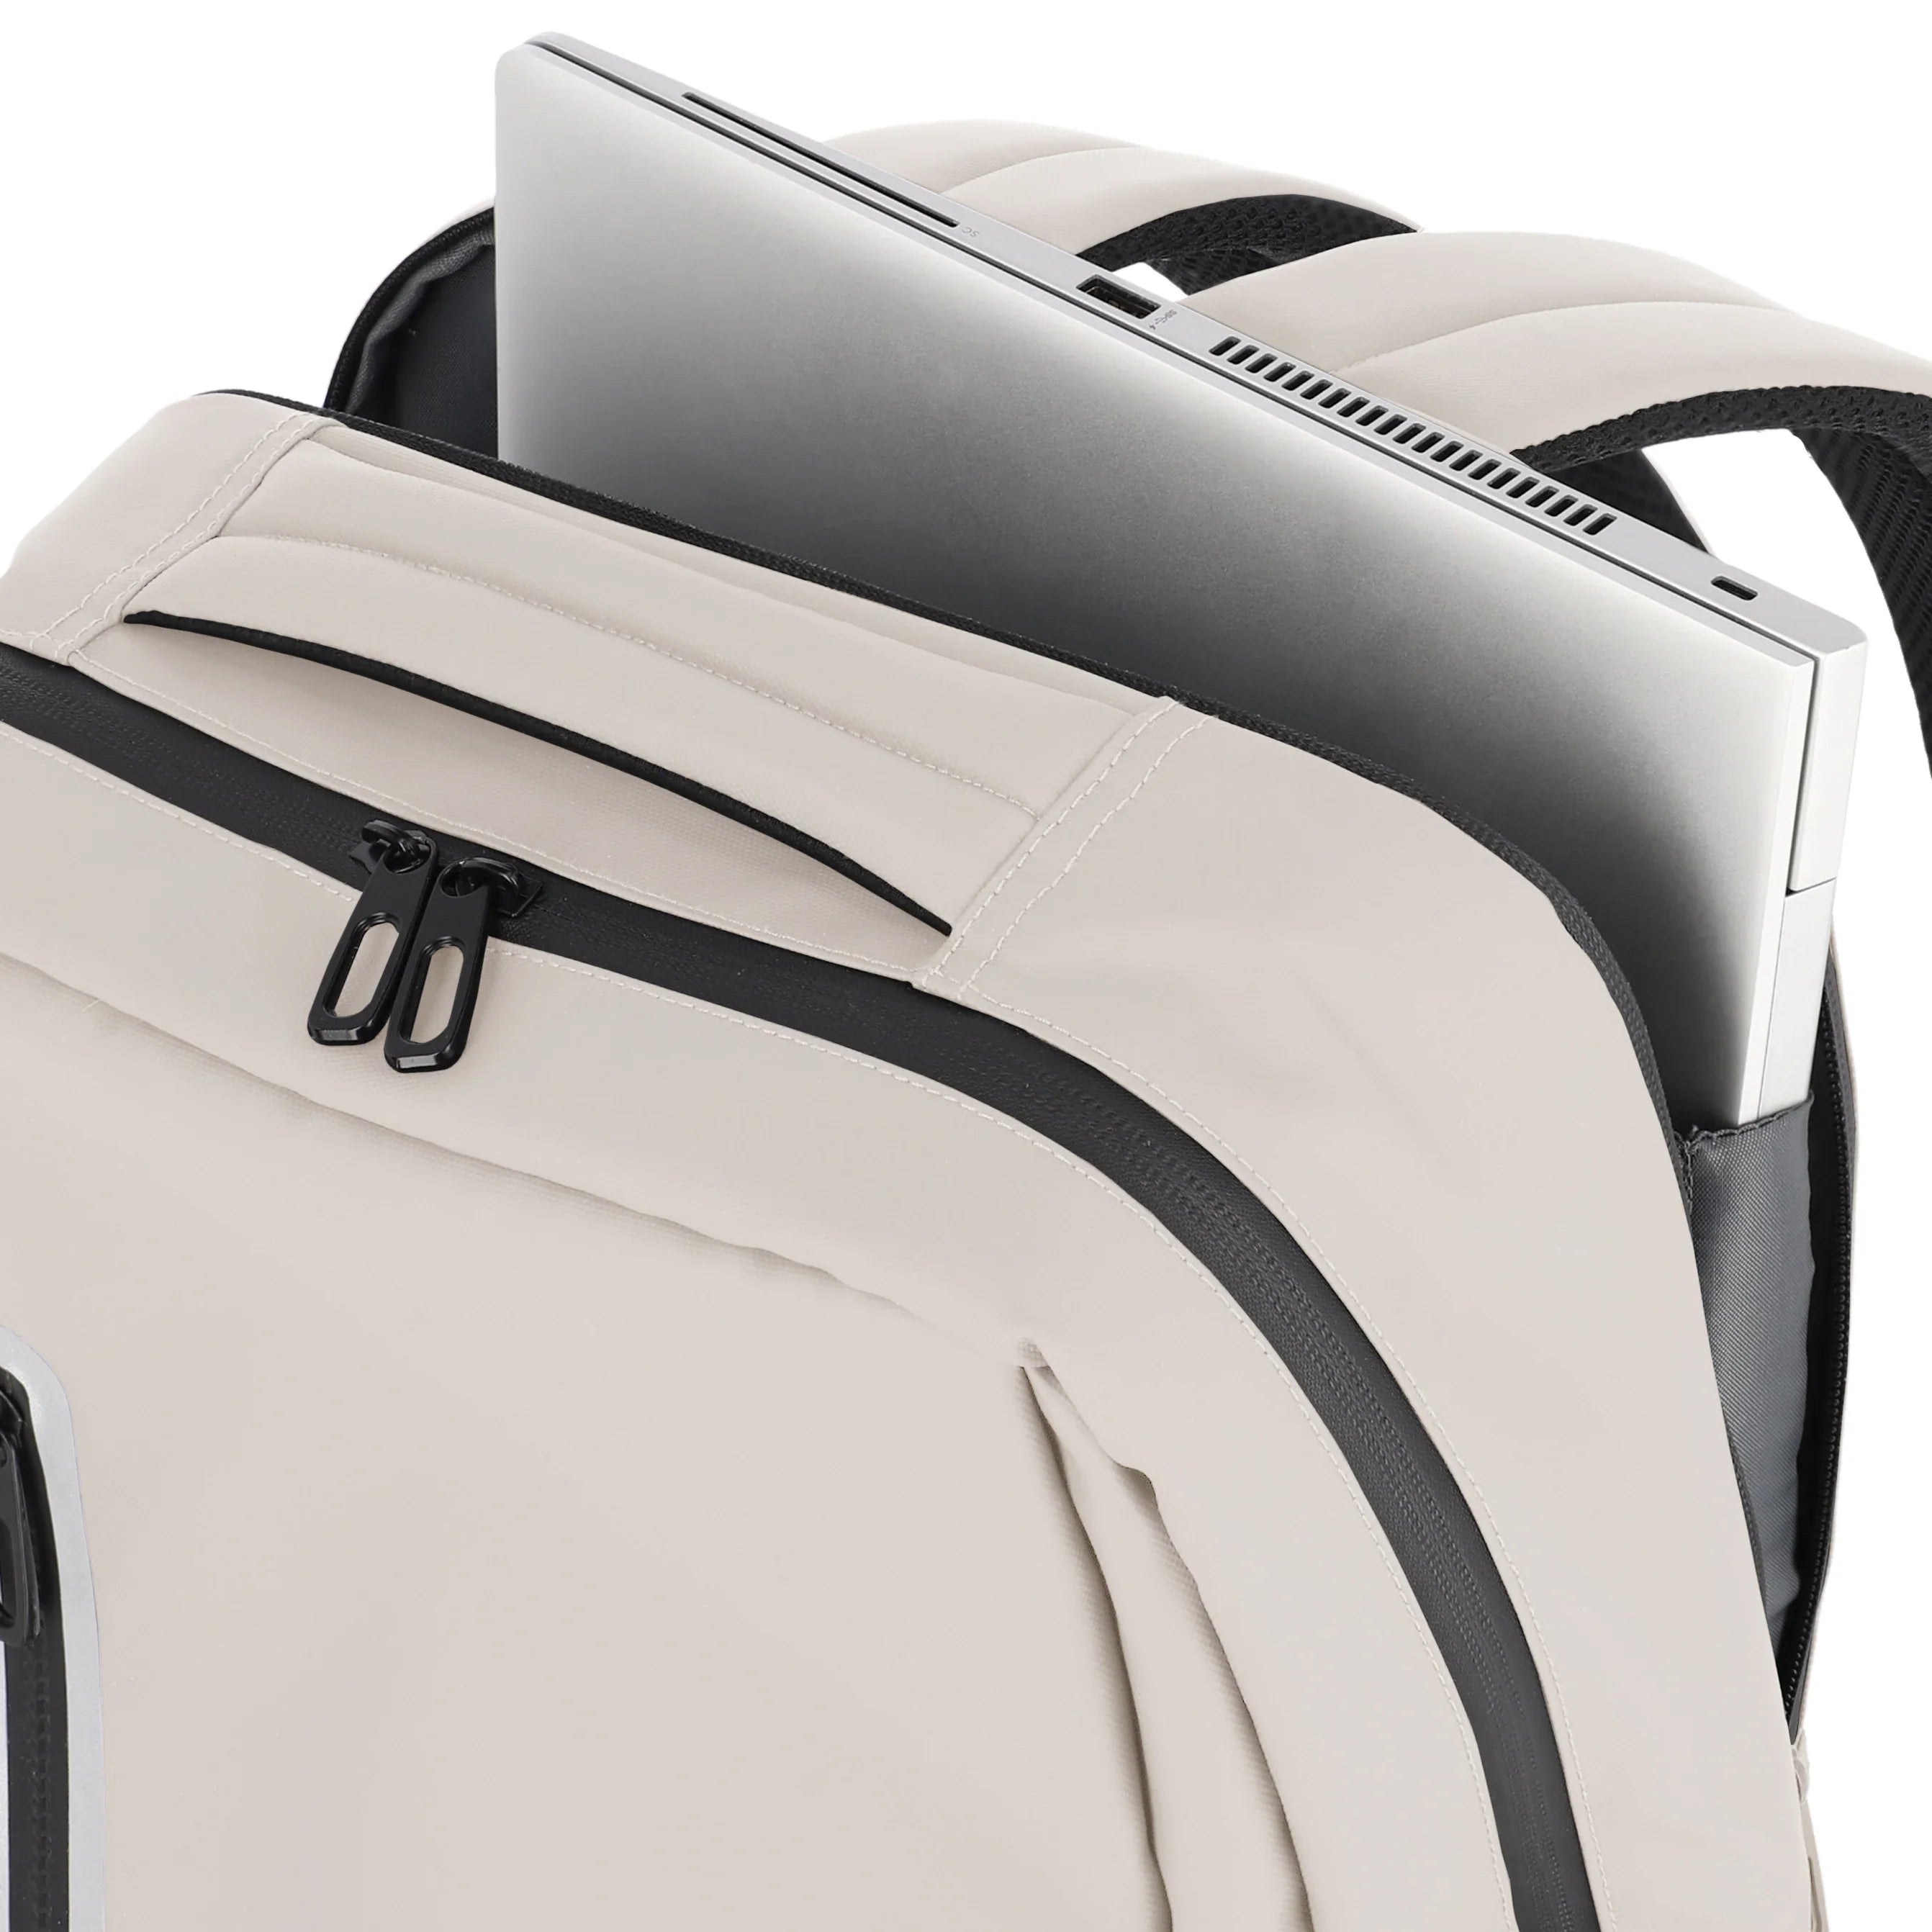 Travelite Basics Boxy Backpack 43 cm - Royal Blue